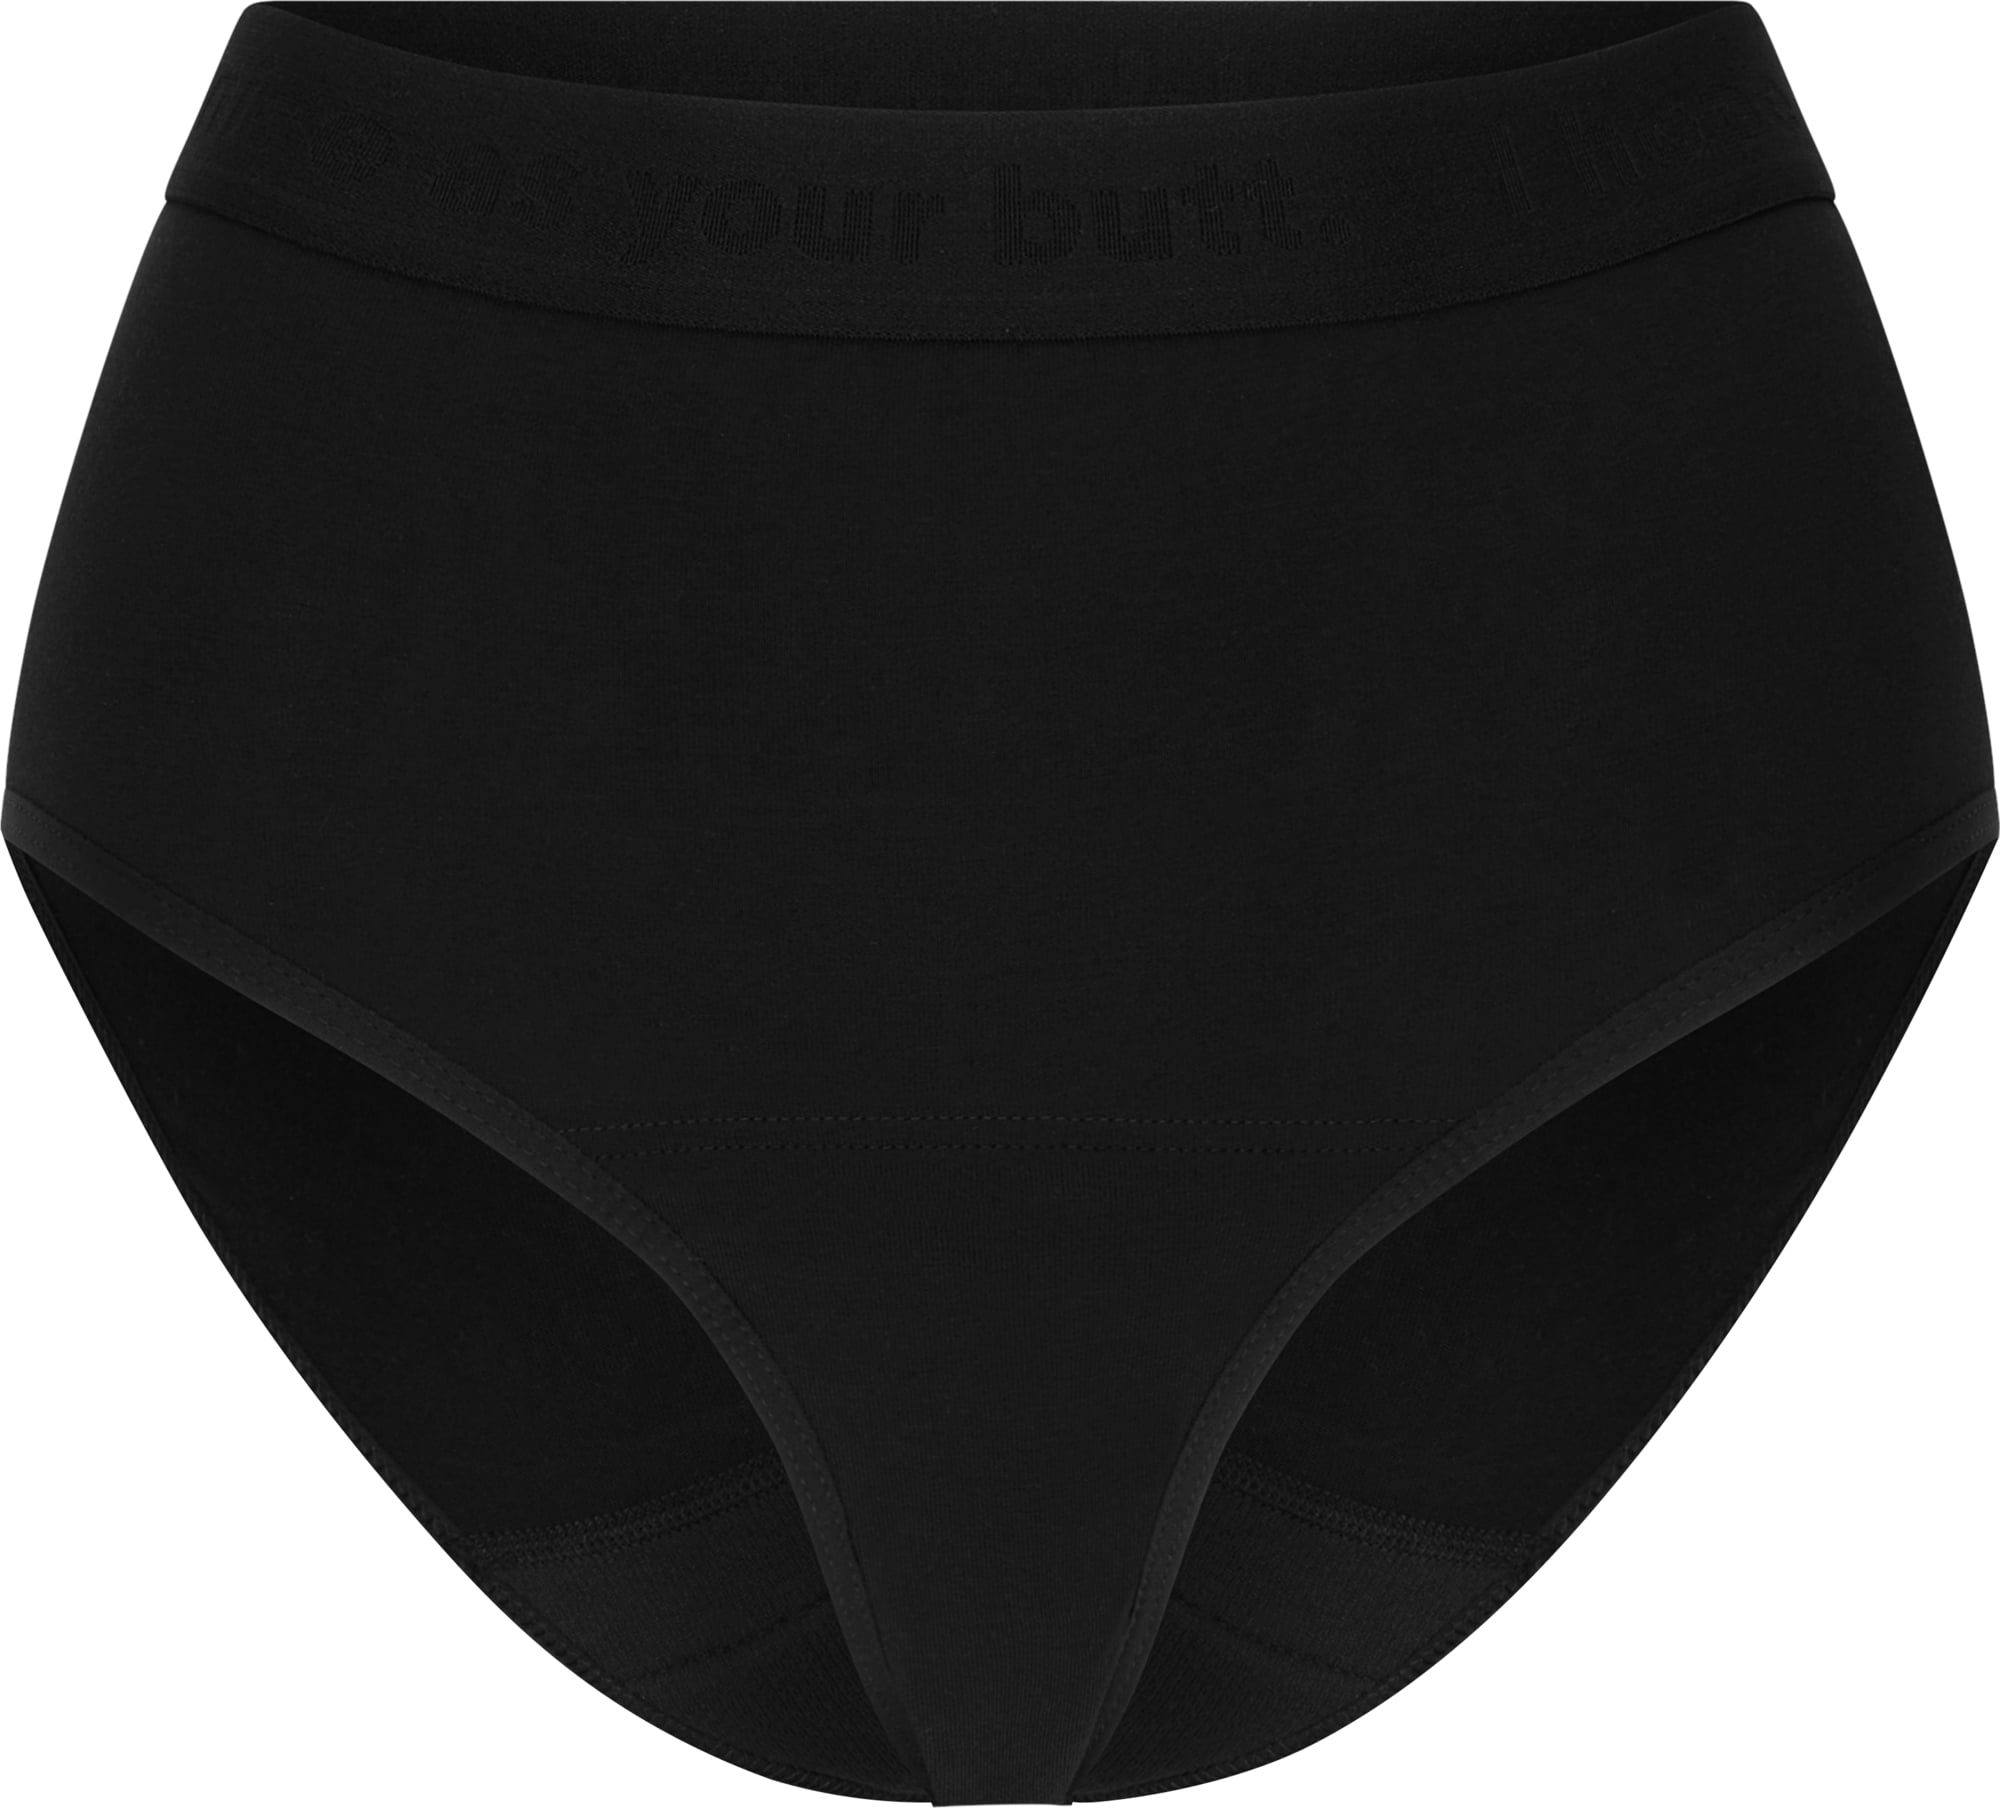 Period Underwear - High Waist Basic Black Normal 32